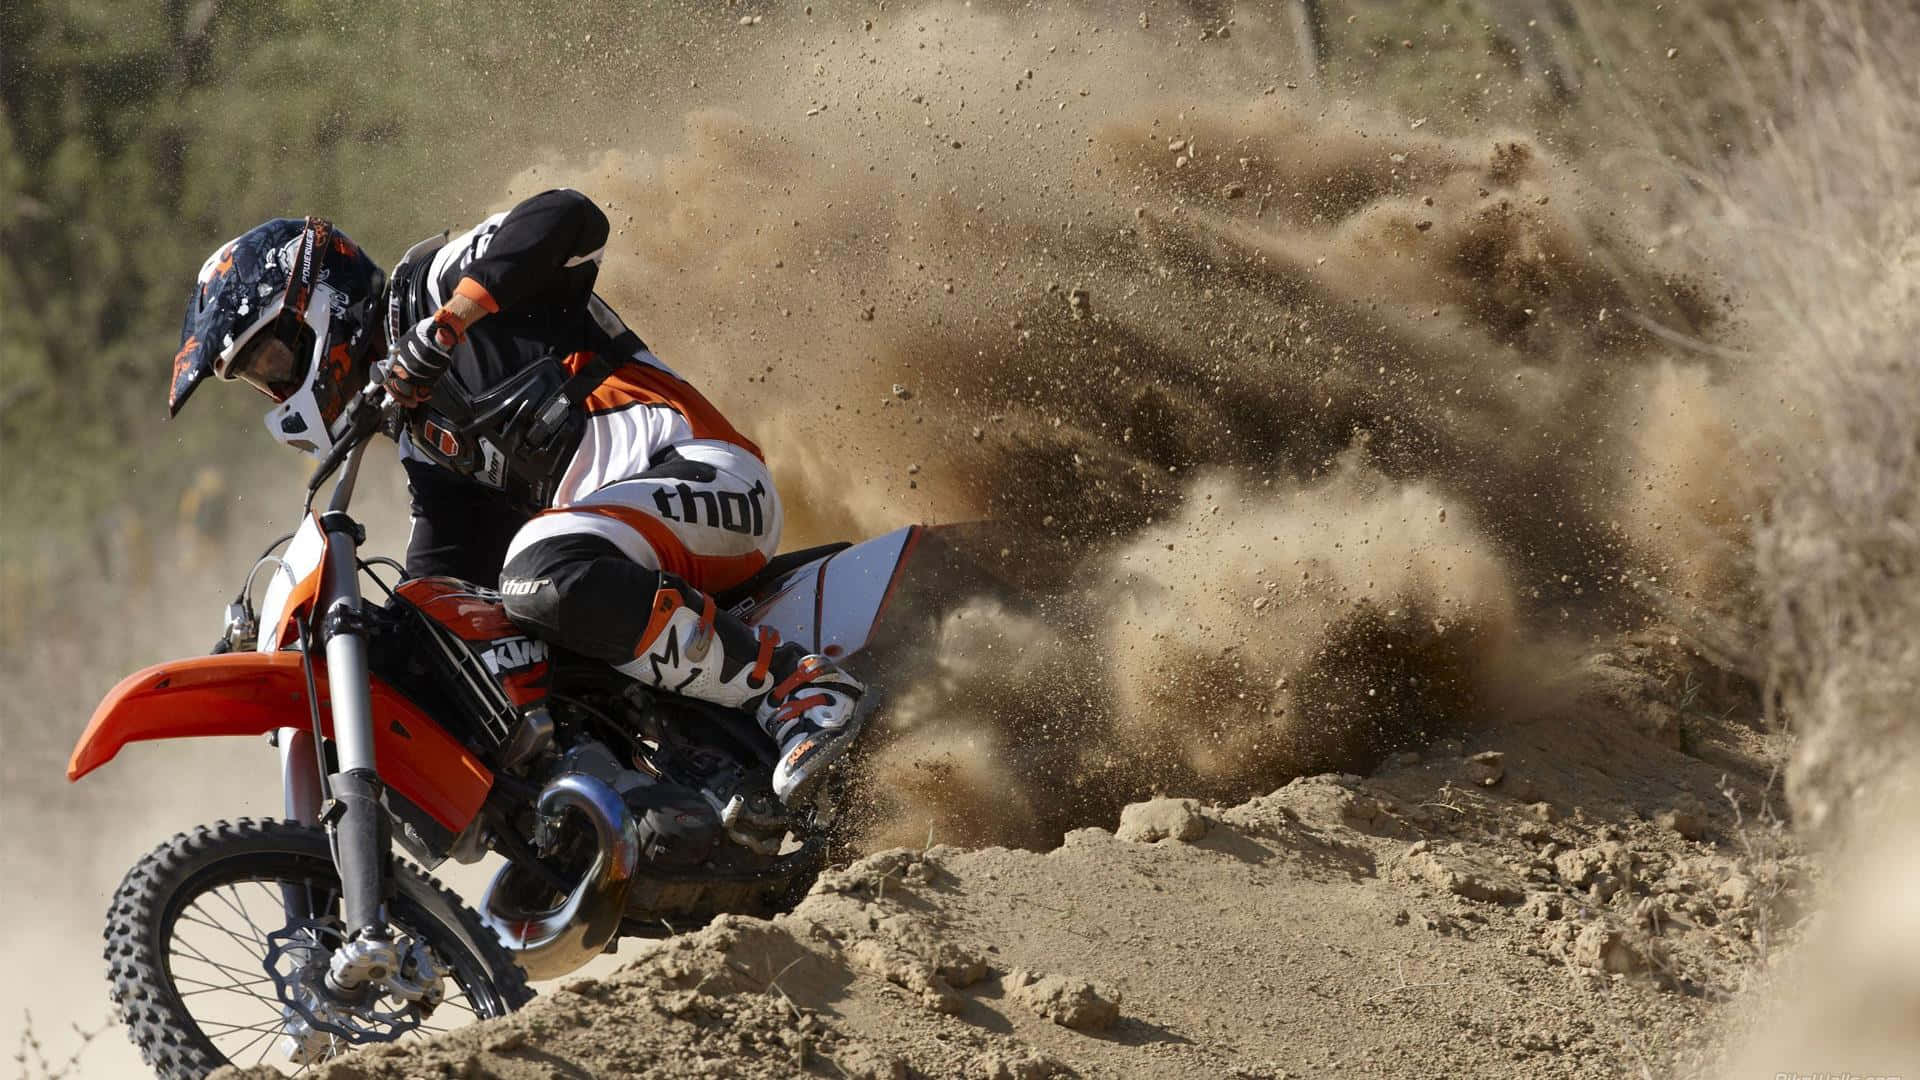 Motocrossracer Che Prende Aria Da Un Salto Di Terra